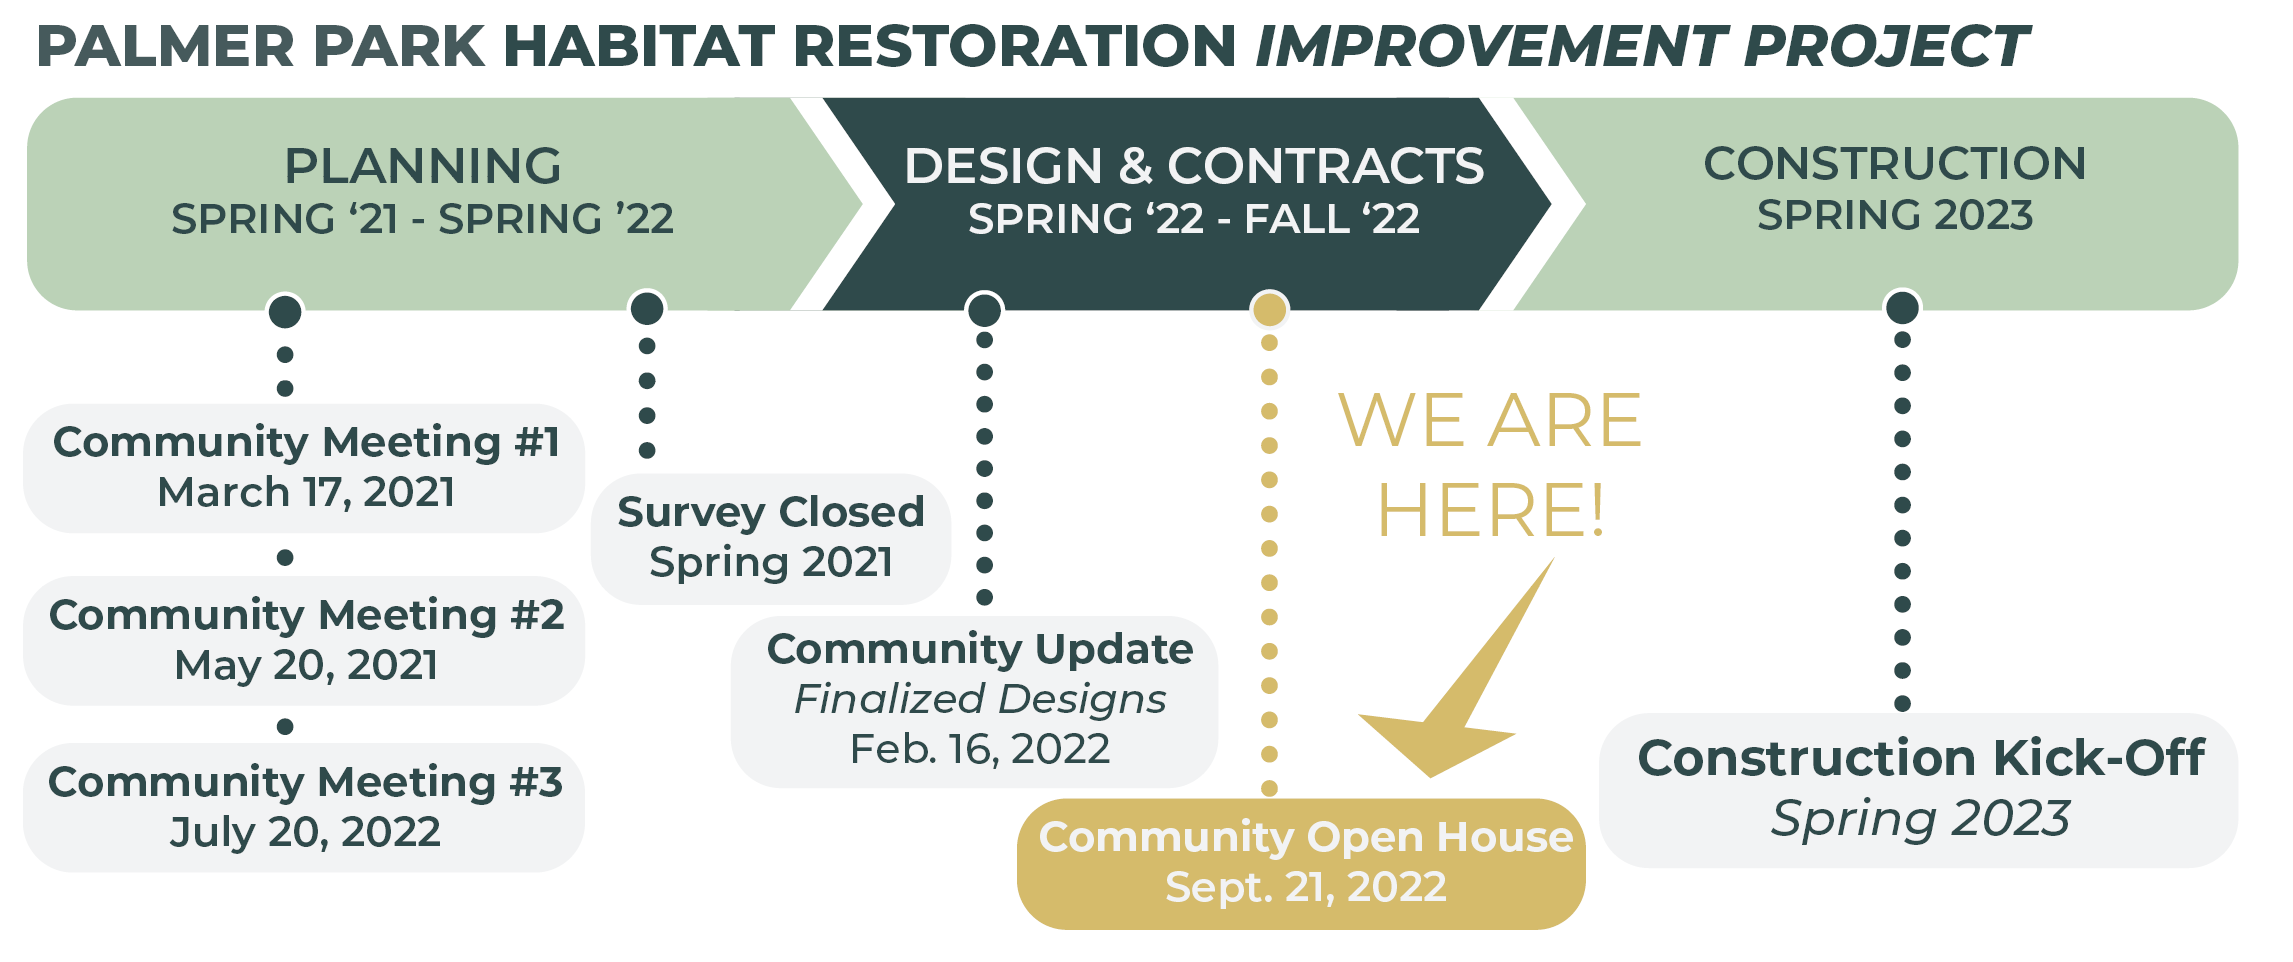 Palmer Park Habitat Restoration Timeline